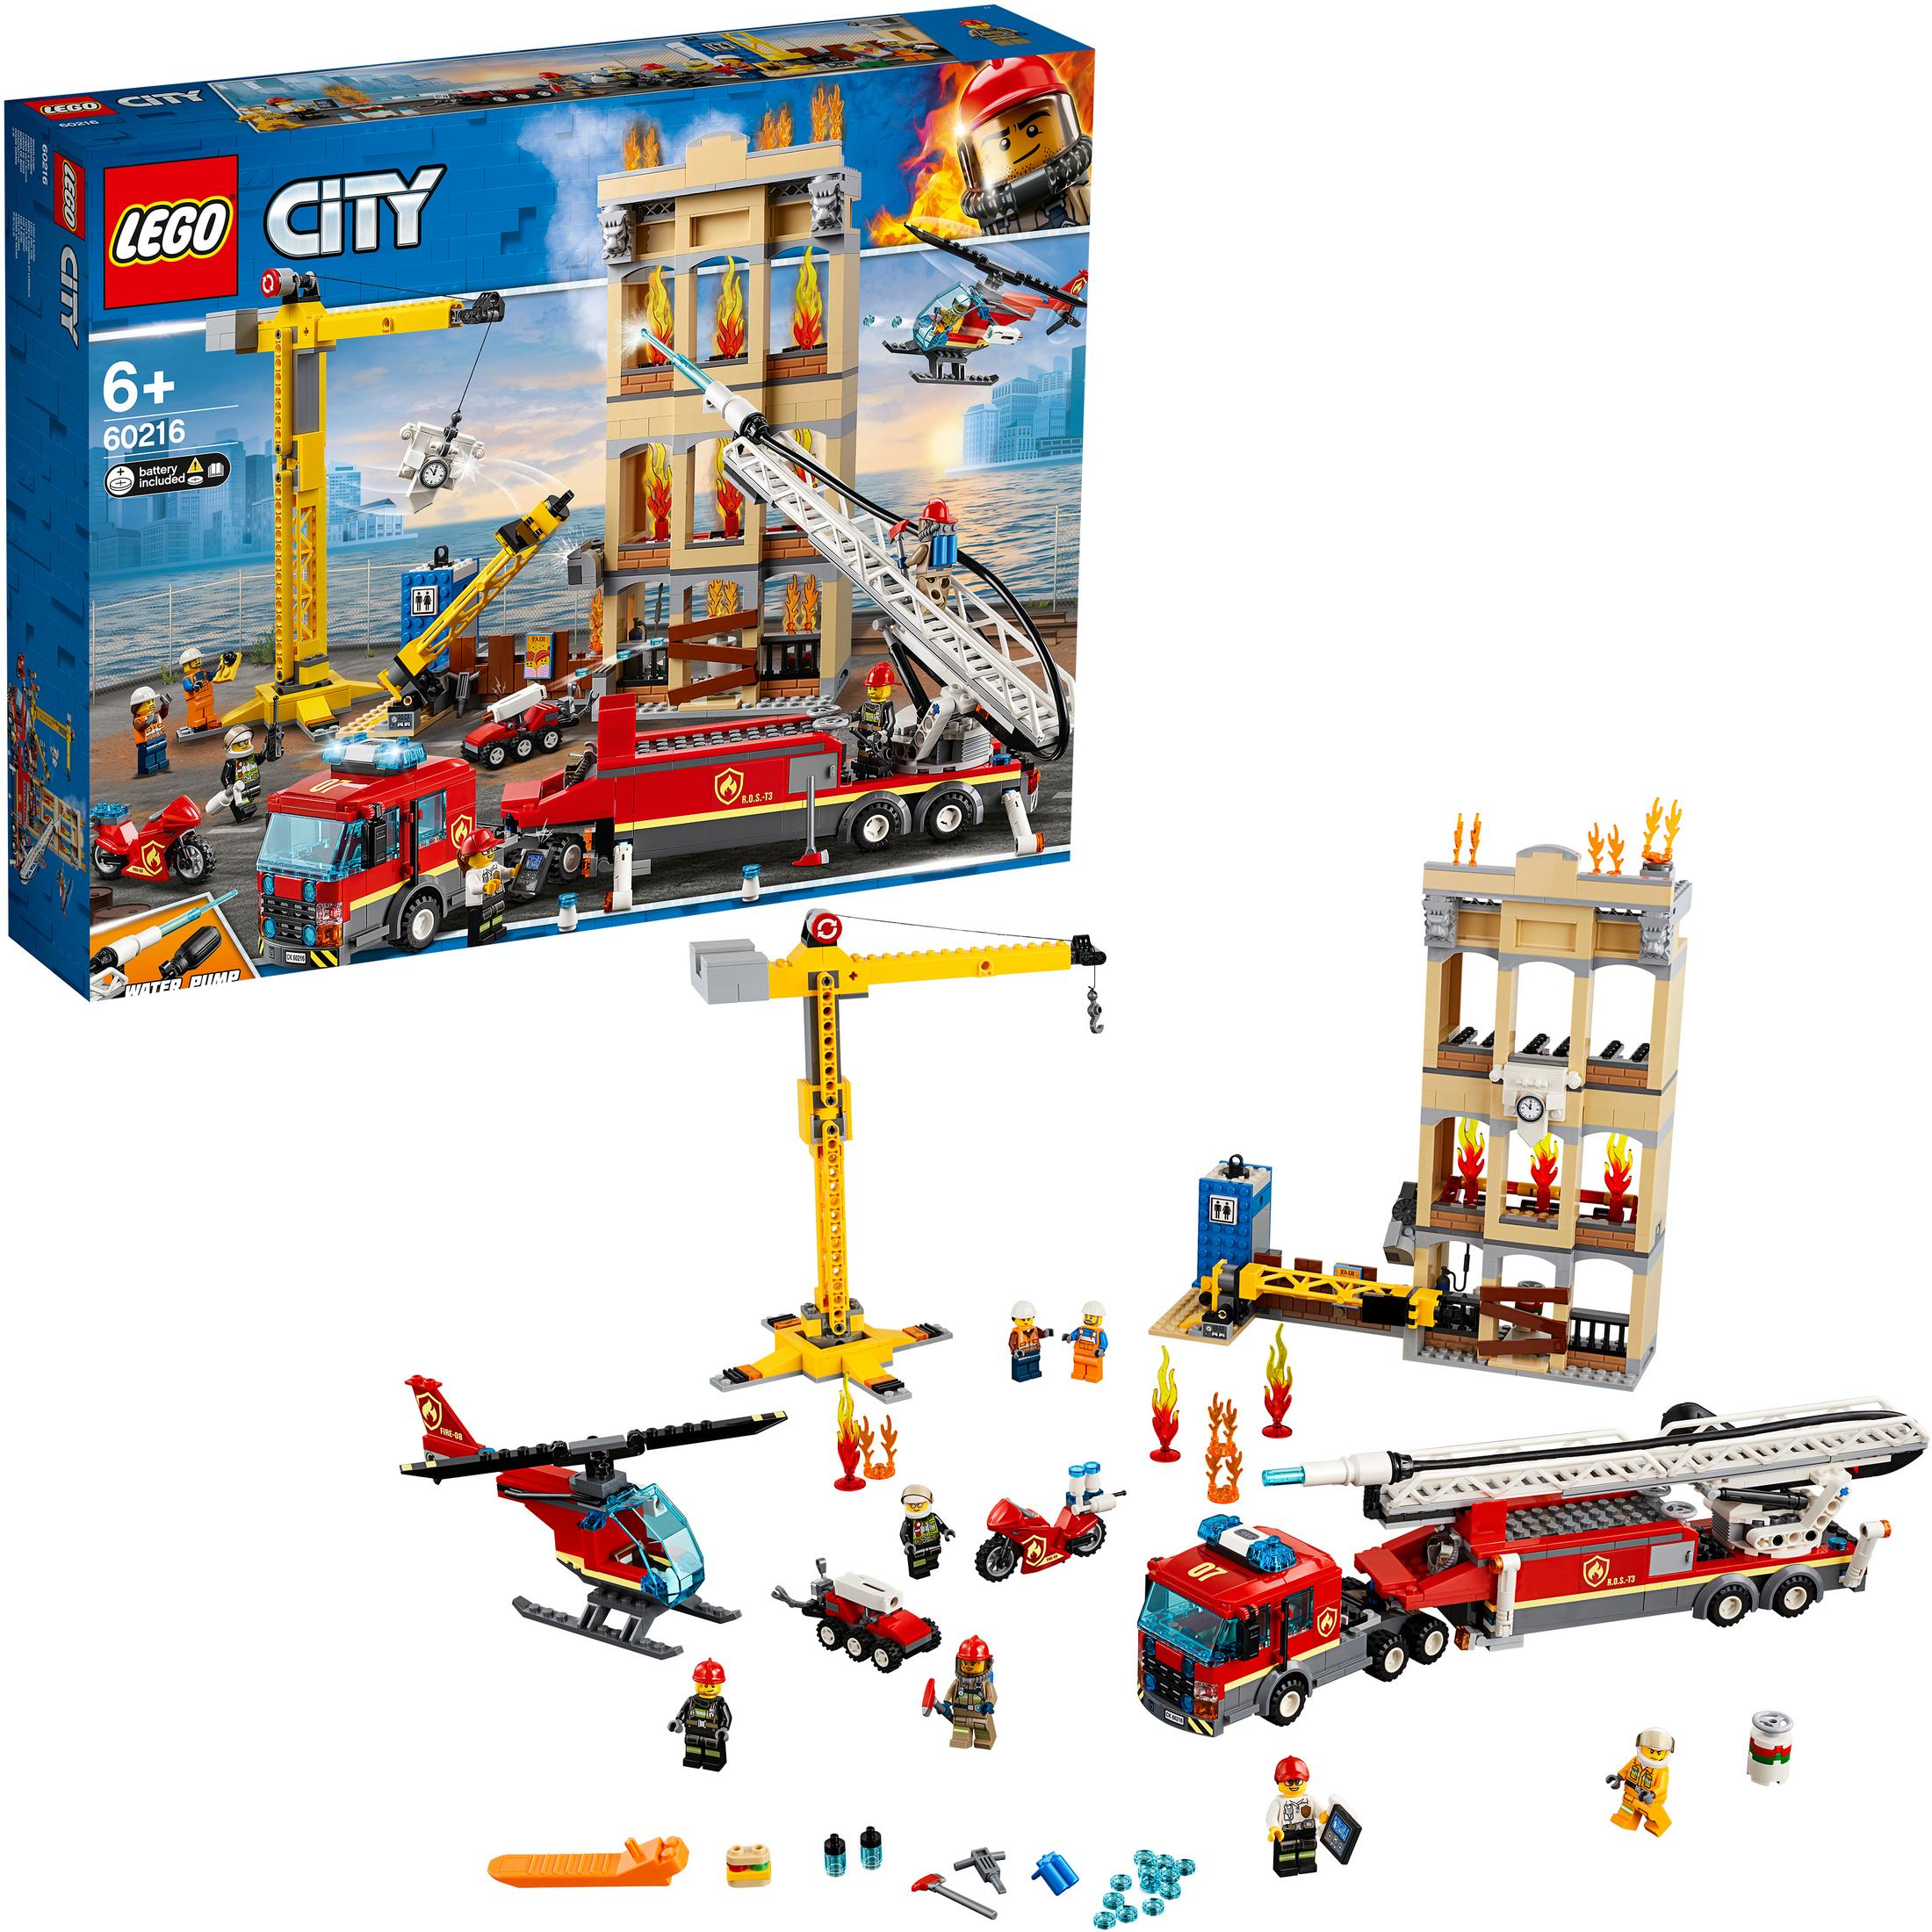 60216 IN FEUERWEHR STADT Mehrfarbig Bausatz, DER LEGO